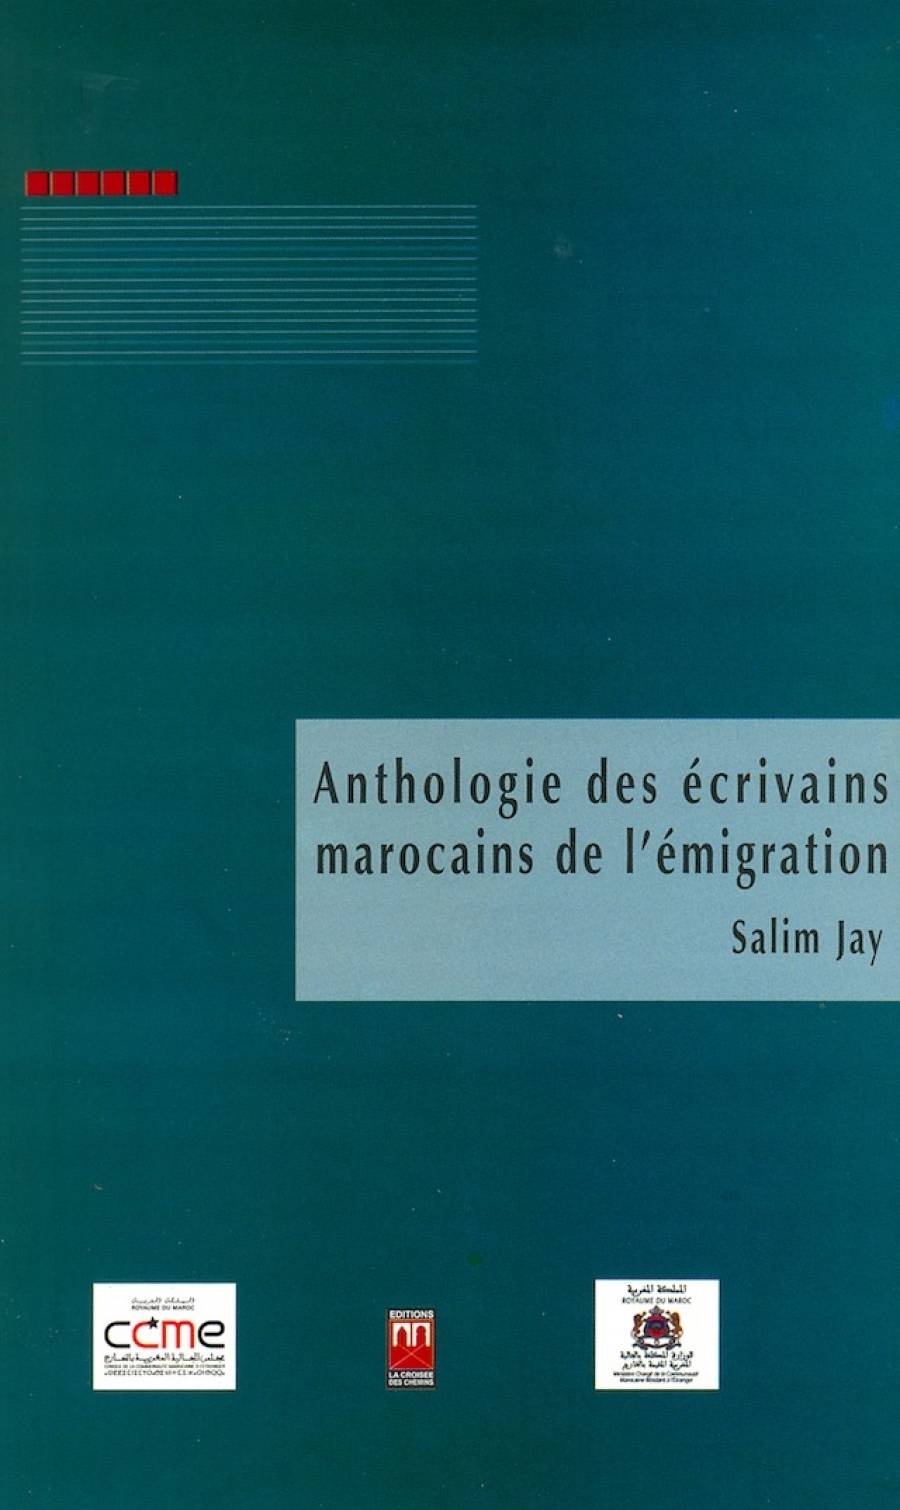 Anthologie des écrivains marocains de l'émigration